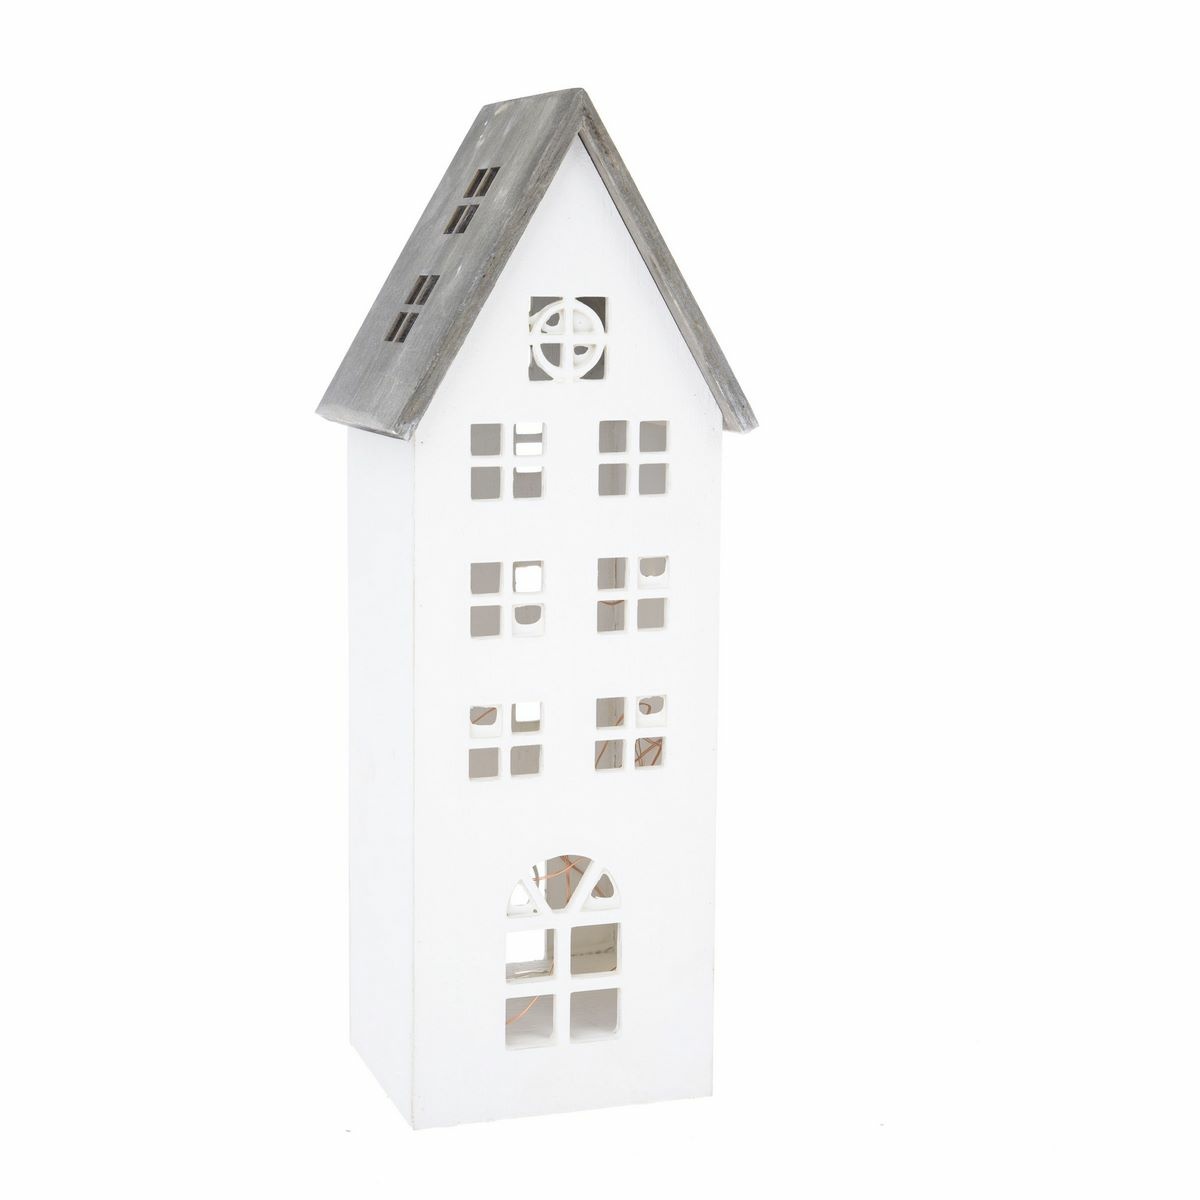 Vánční dřevěná LED dekorace Light house bílá, 11,7 x 21 x 9,8 cm